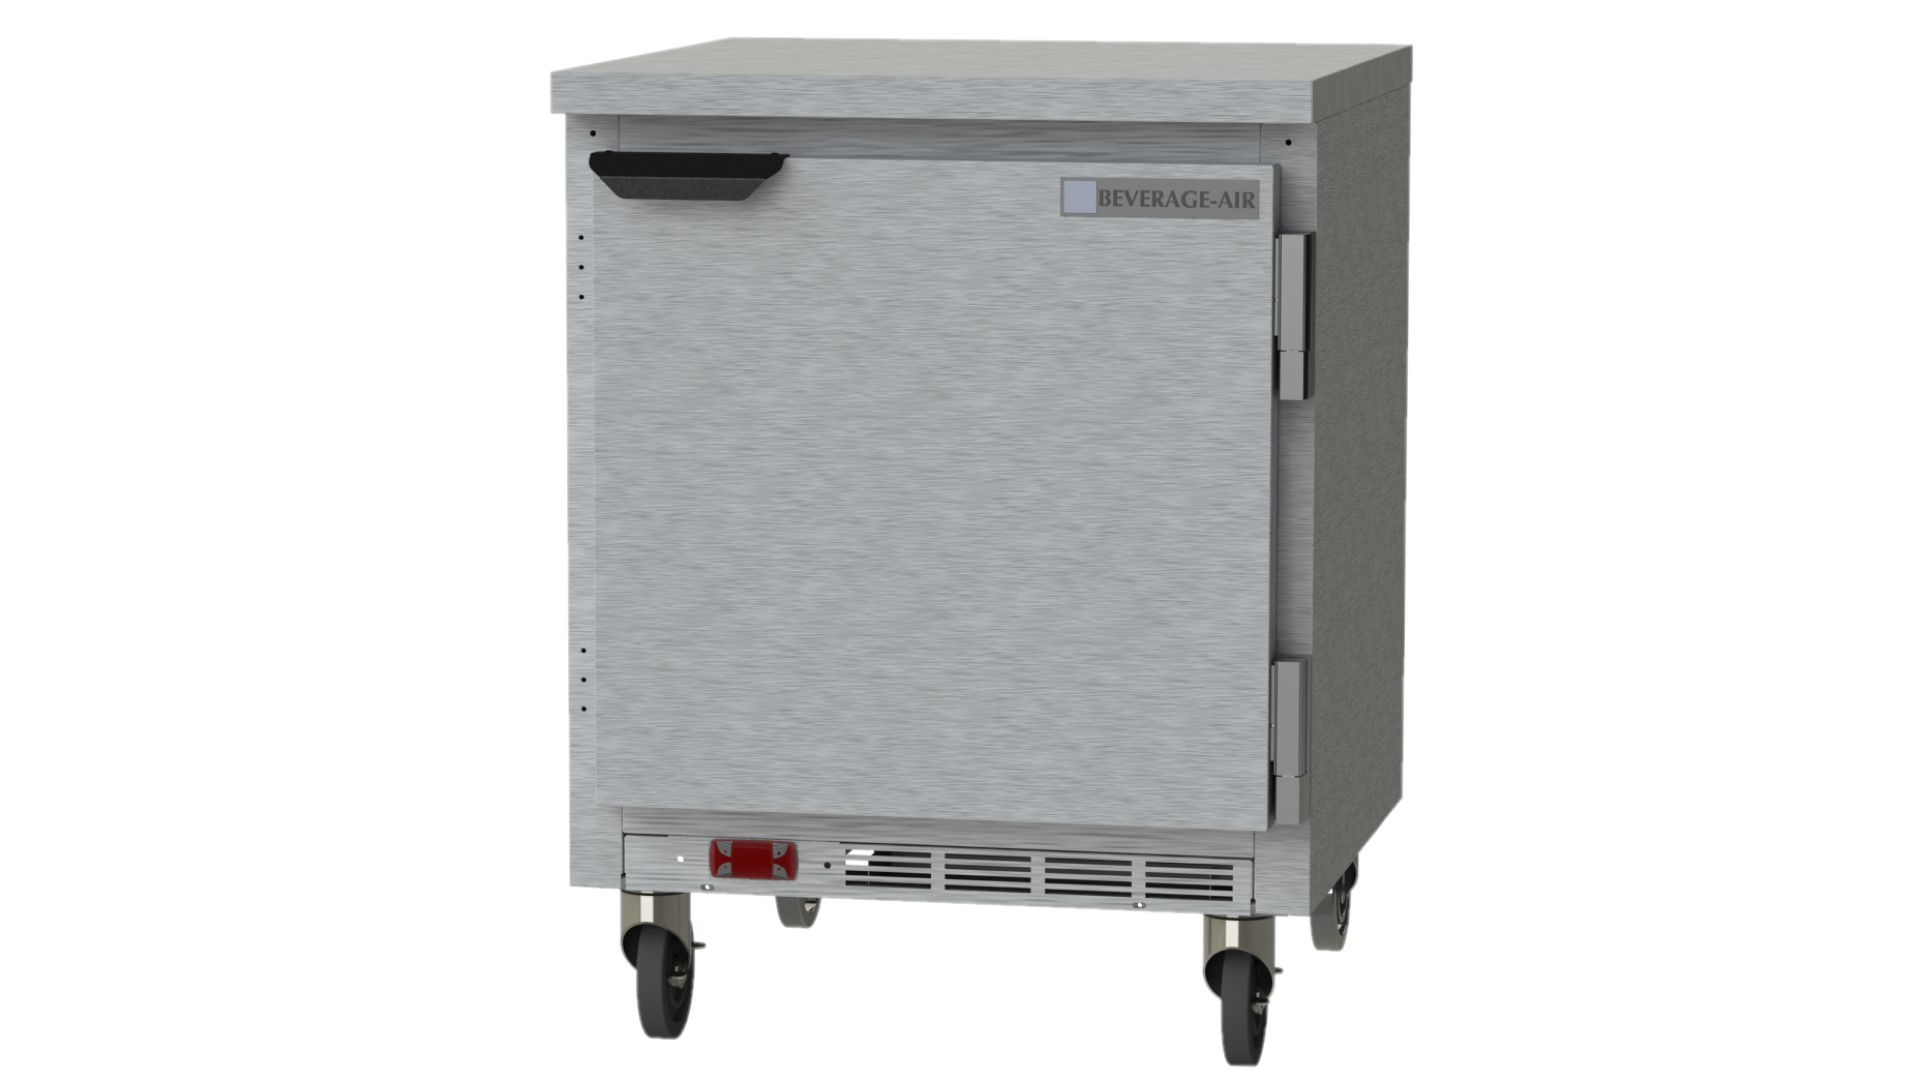 Beverage Air WTR27HC-FLT Worktop Refrigerator 27"